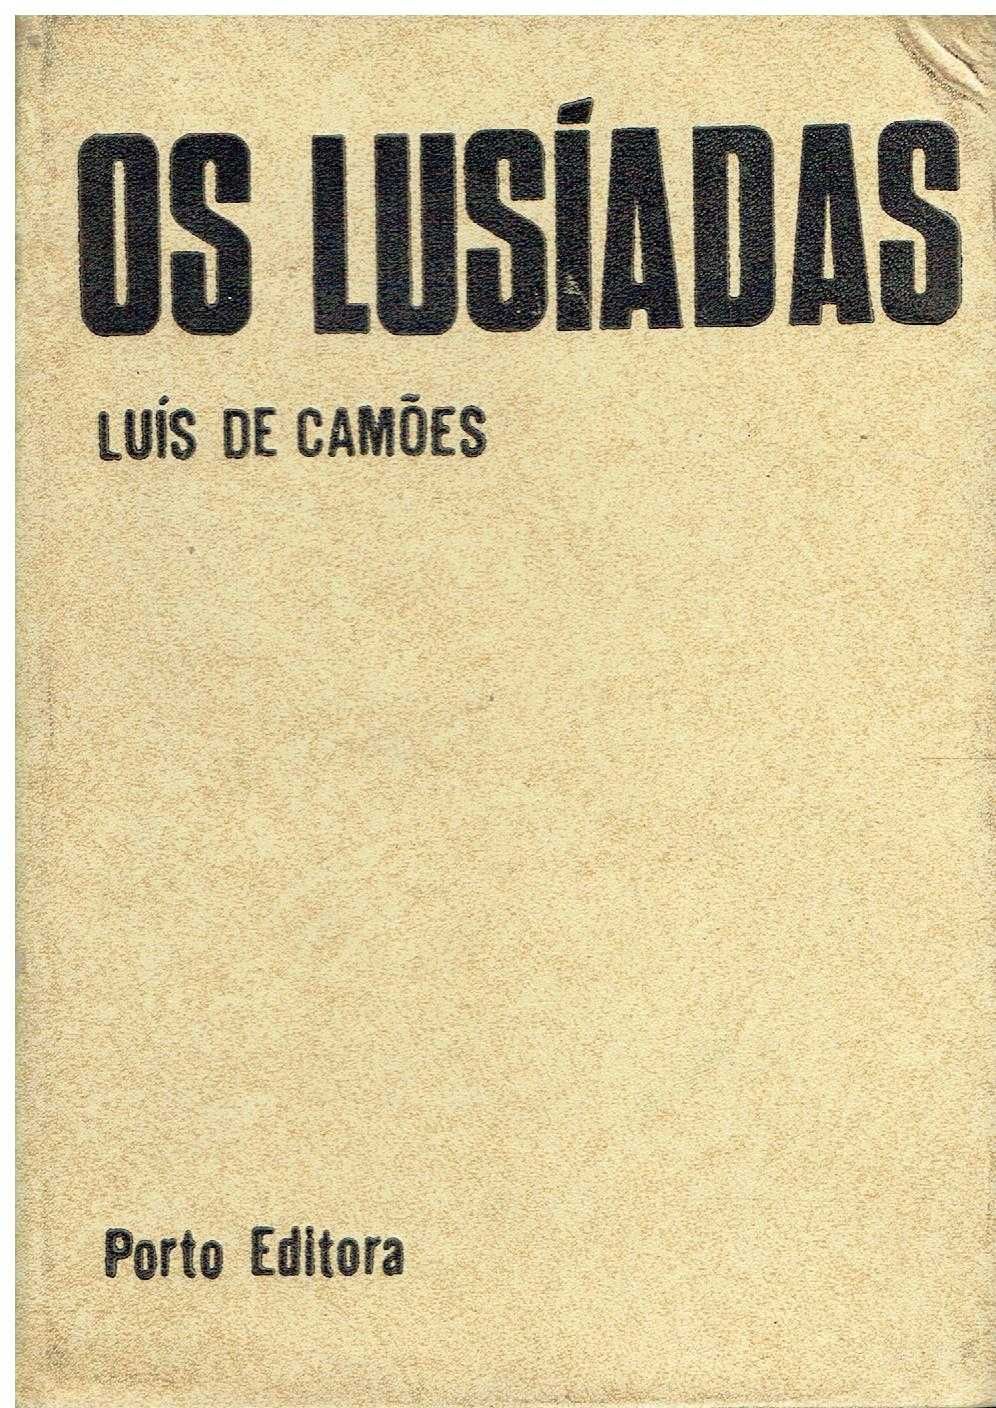 11127

Os Lusiadas
de Luis de Camões